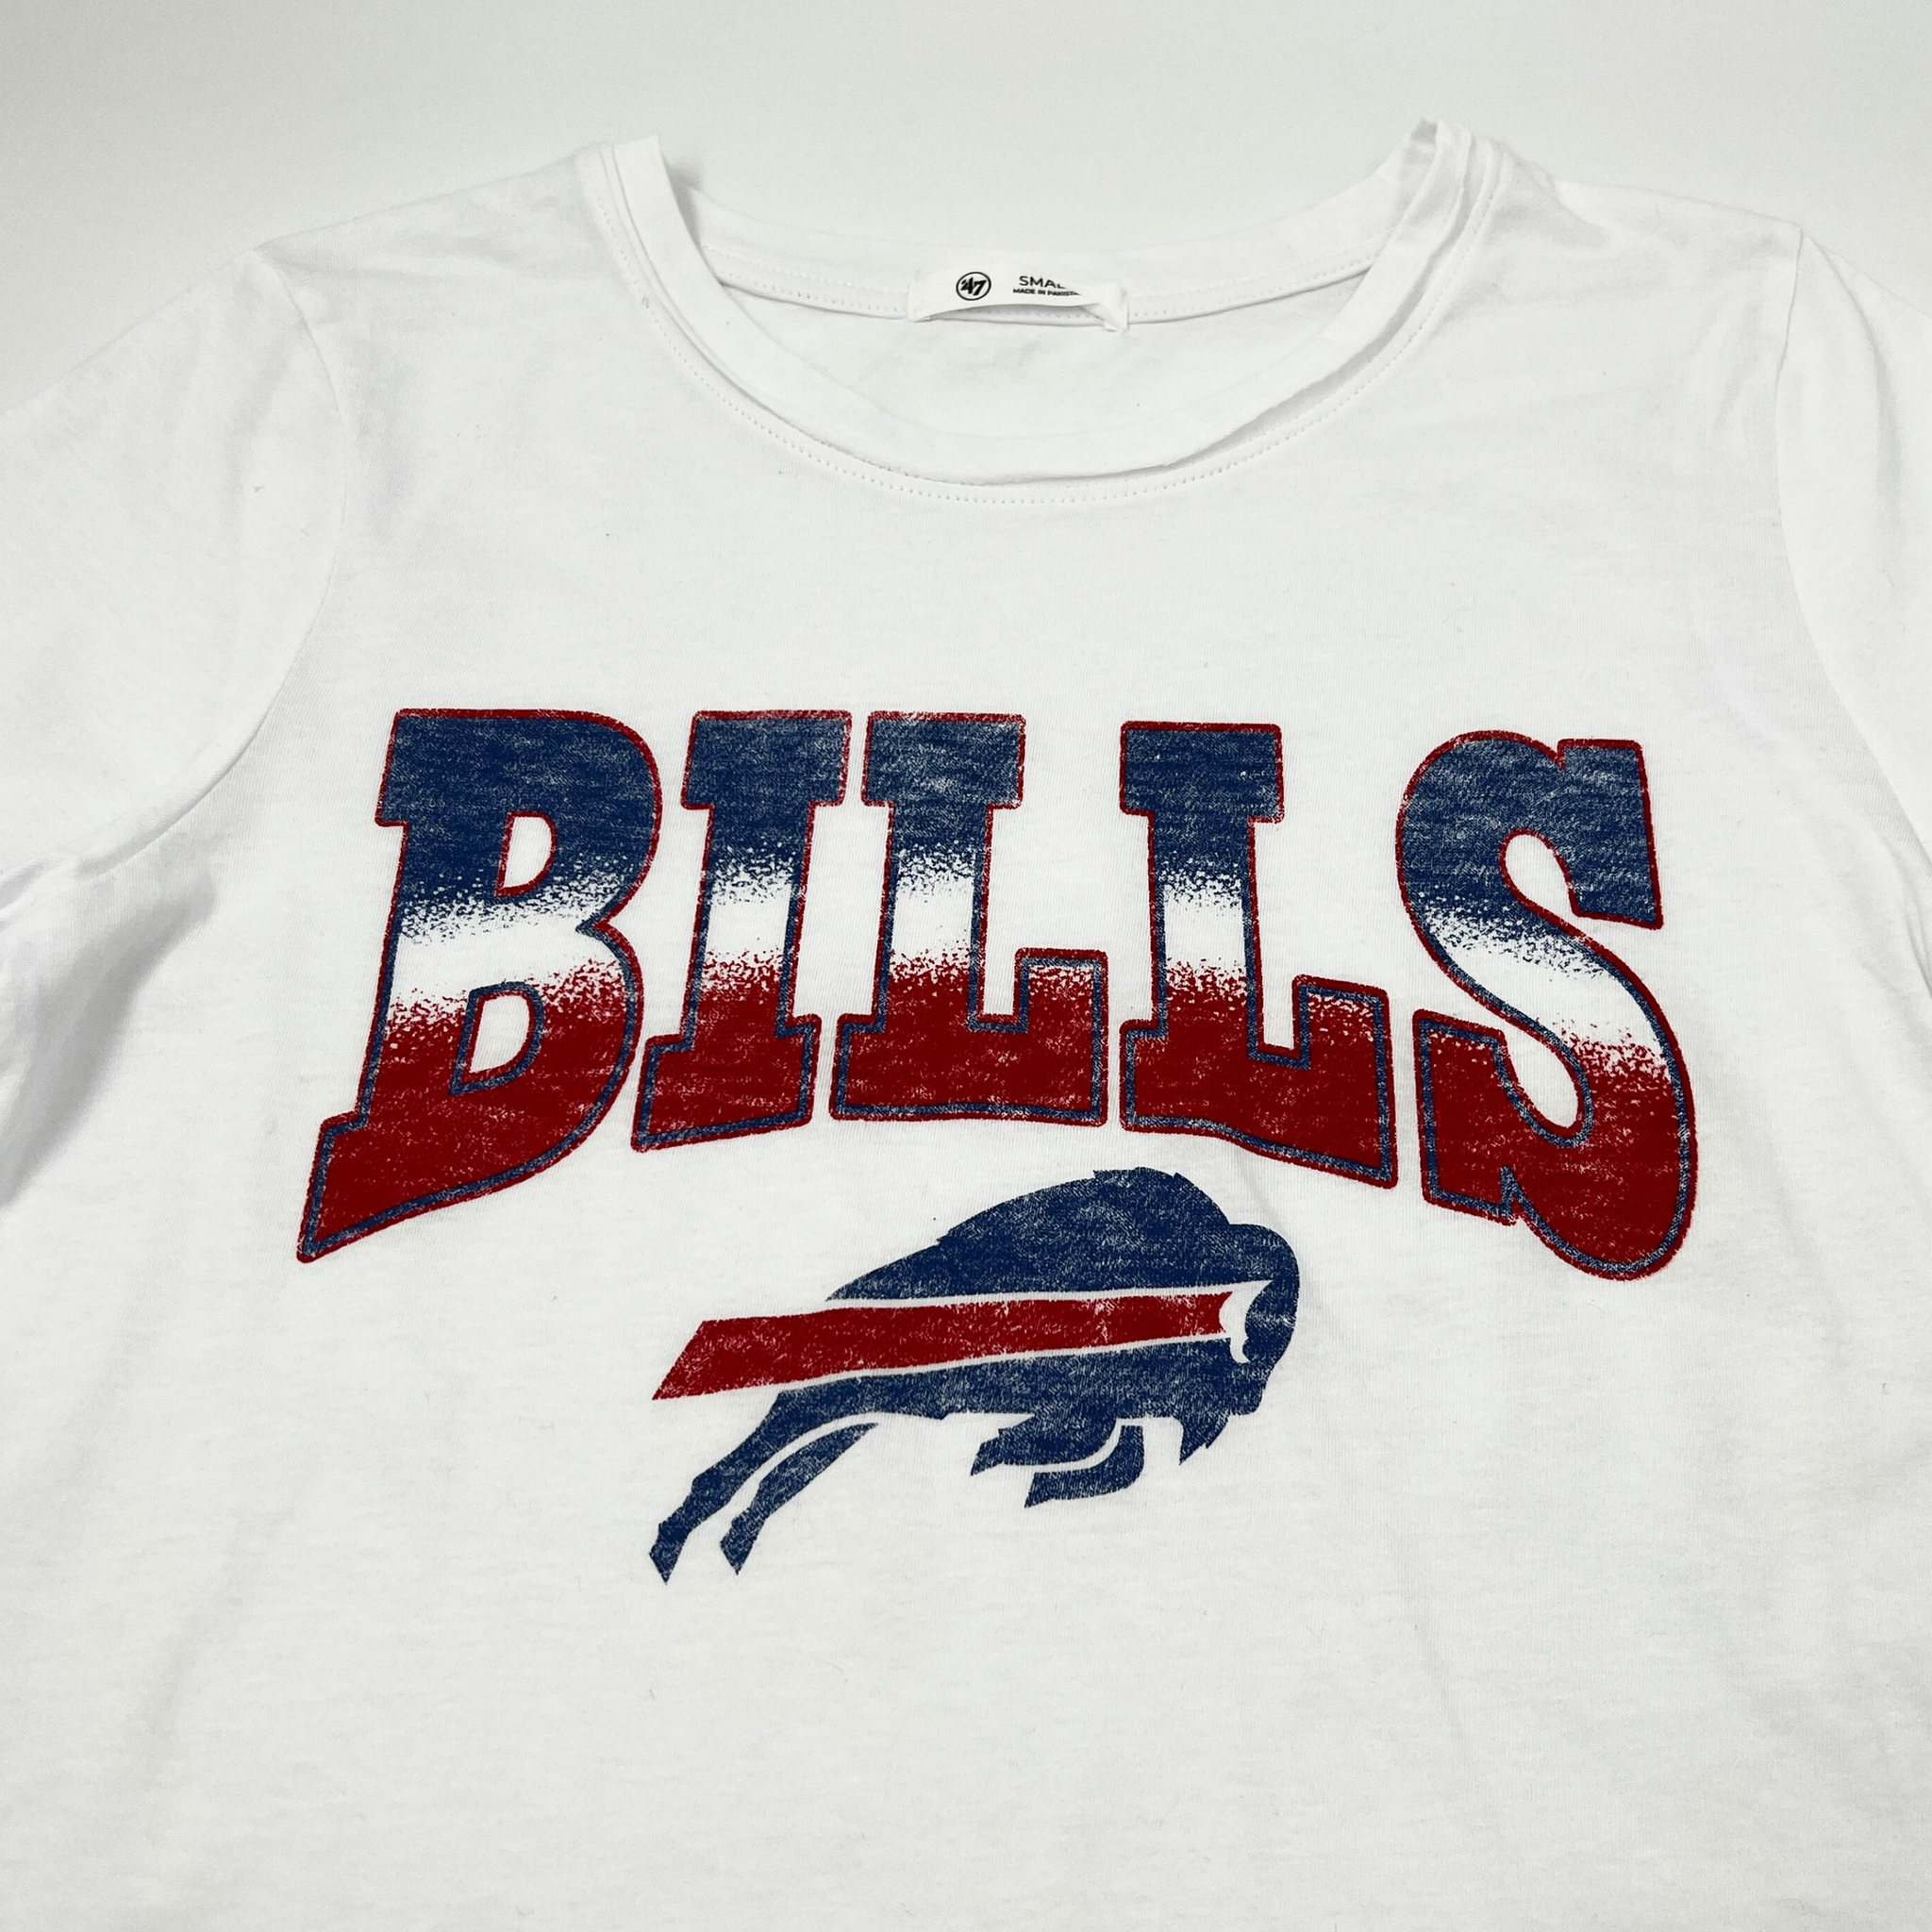 buffalo bills t shirt women's